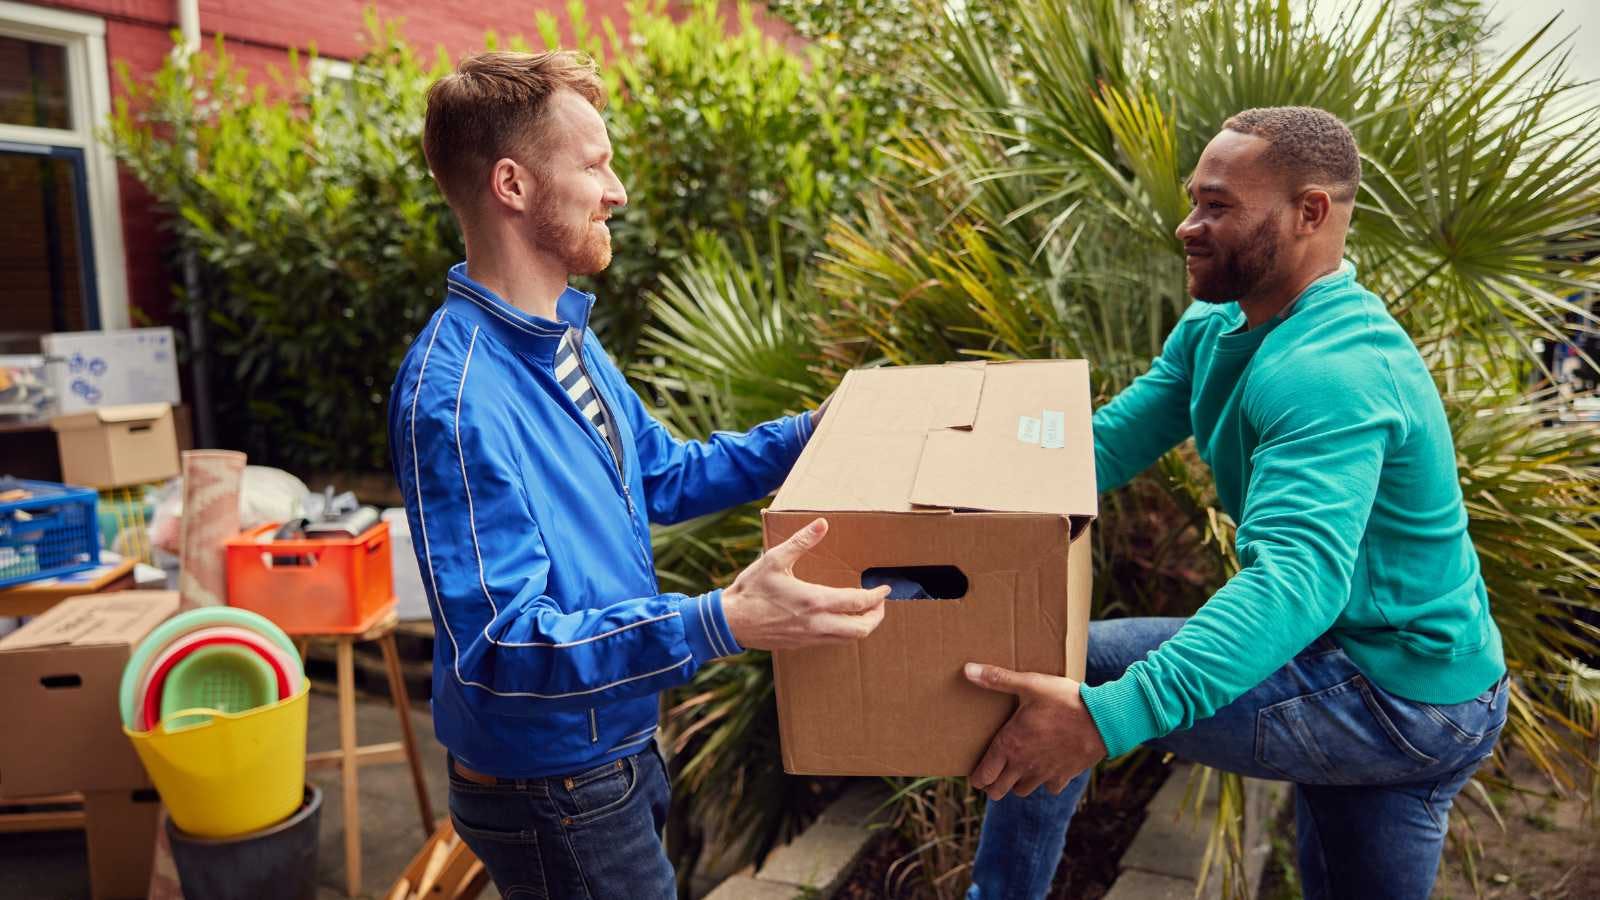 Een man helpt zijn vriend en neemt de verhuisdoos van hem over. Op de achtergrond staan nog meer verhuisspullen.